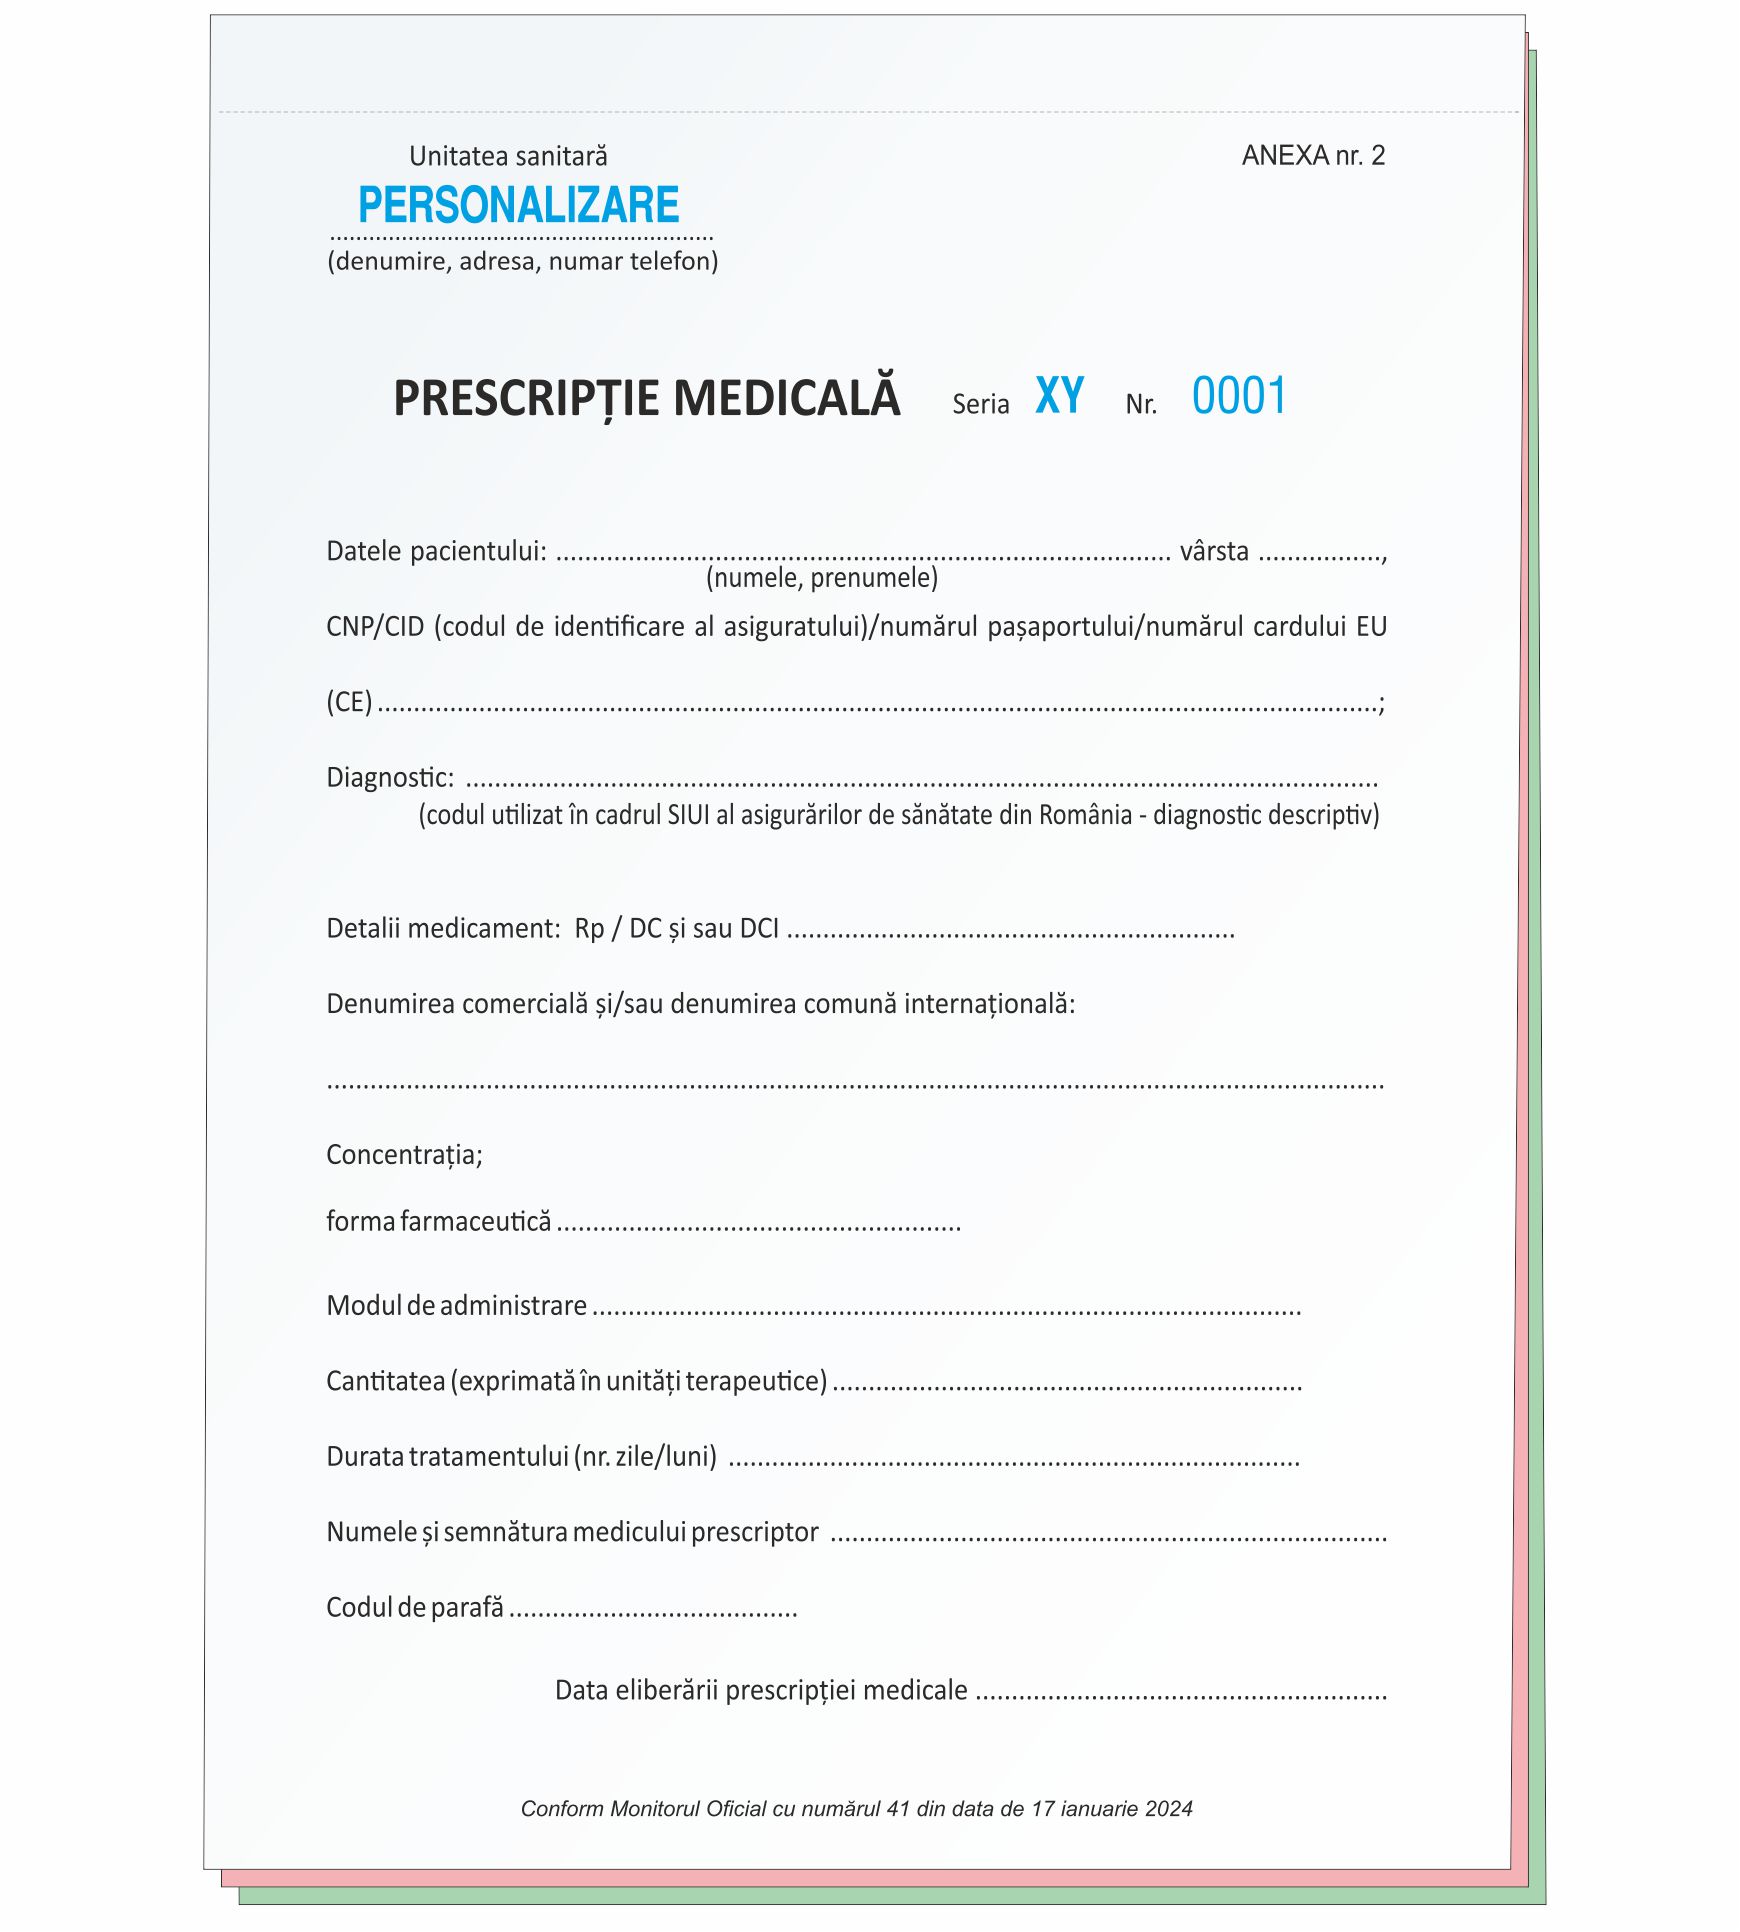 Retete medicale personalizate - model nou special pentru prescriptii antibiotice (cerere oferta pe office@casatipografica.ro)